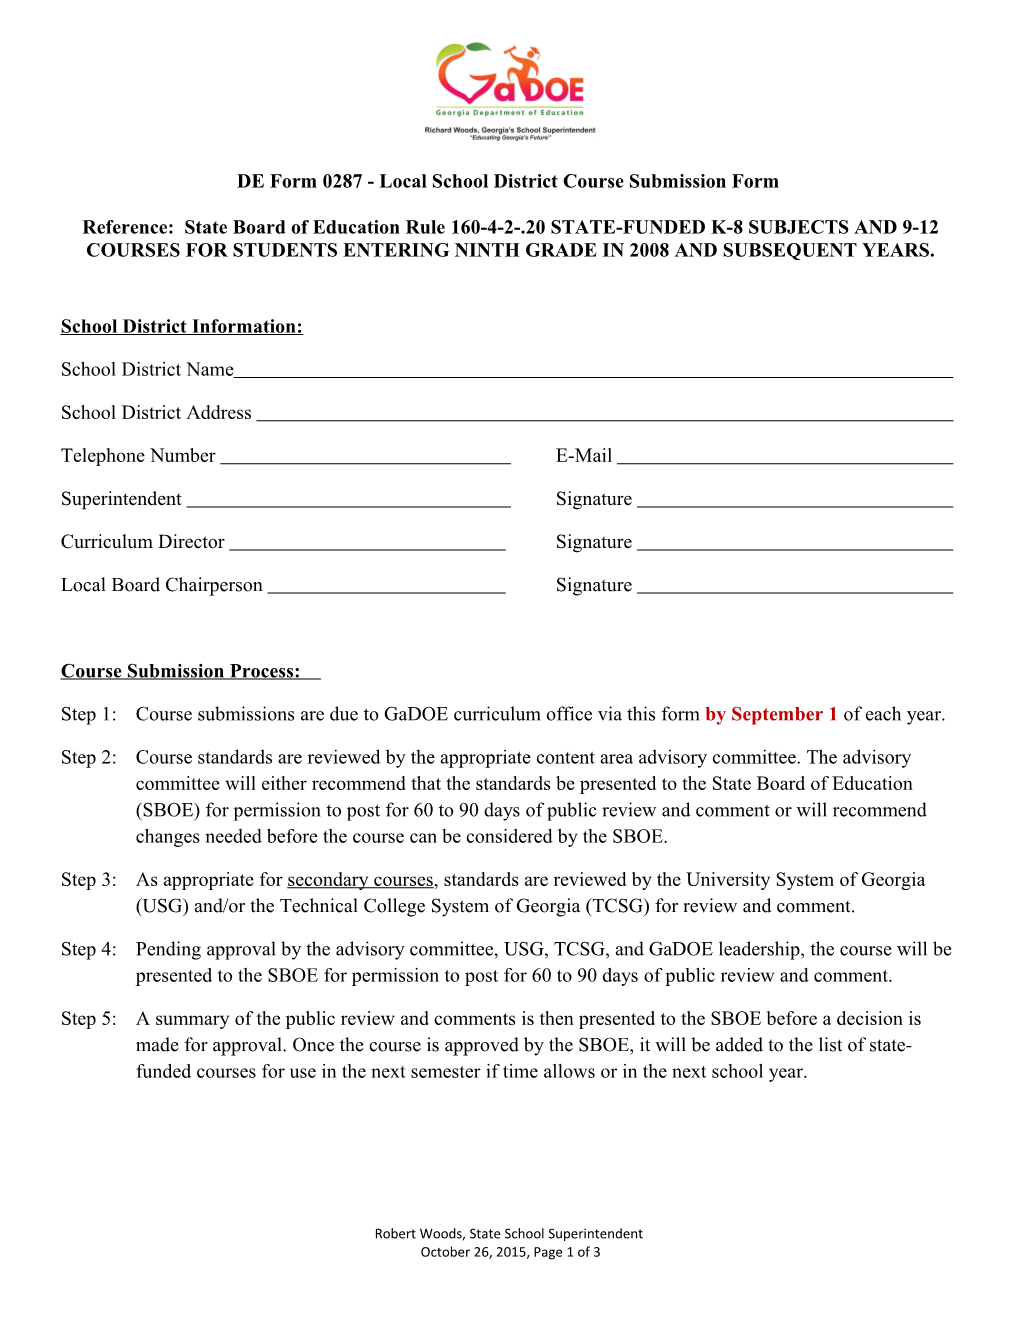 DE Form 0287 -Local School District Course Submission Form